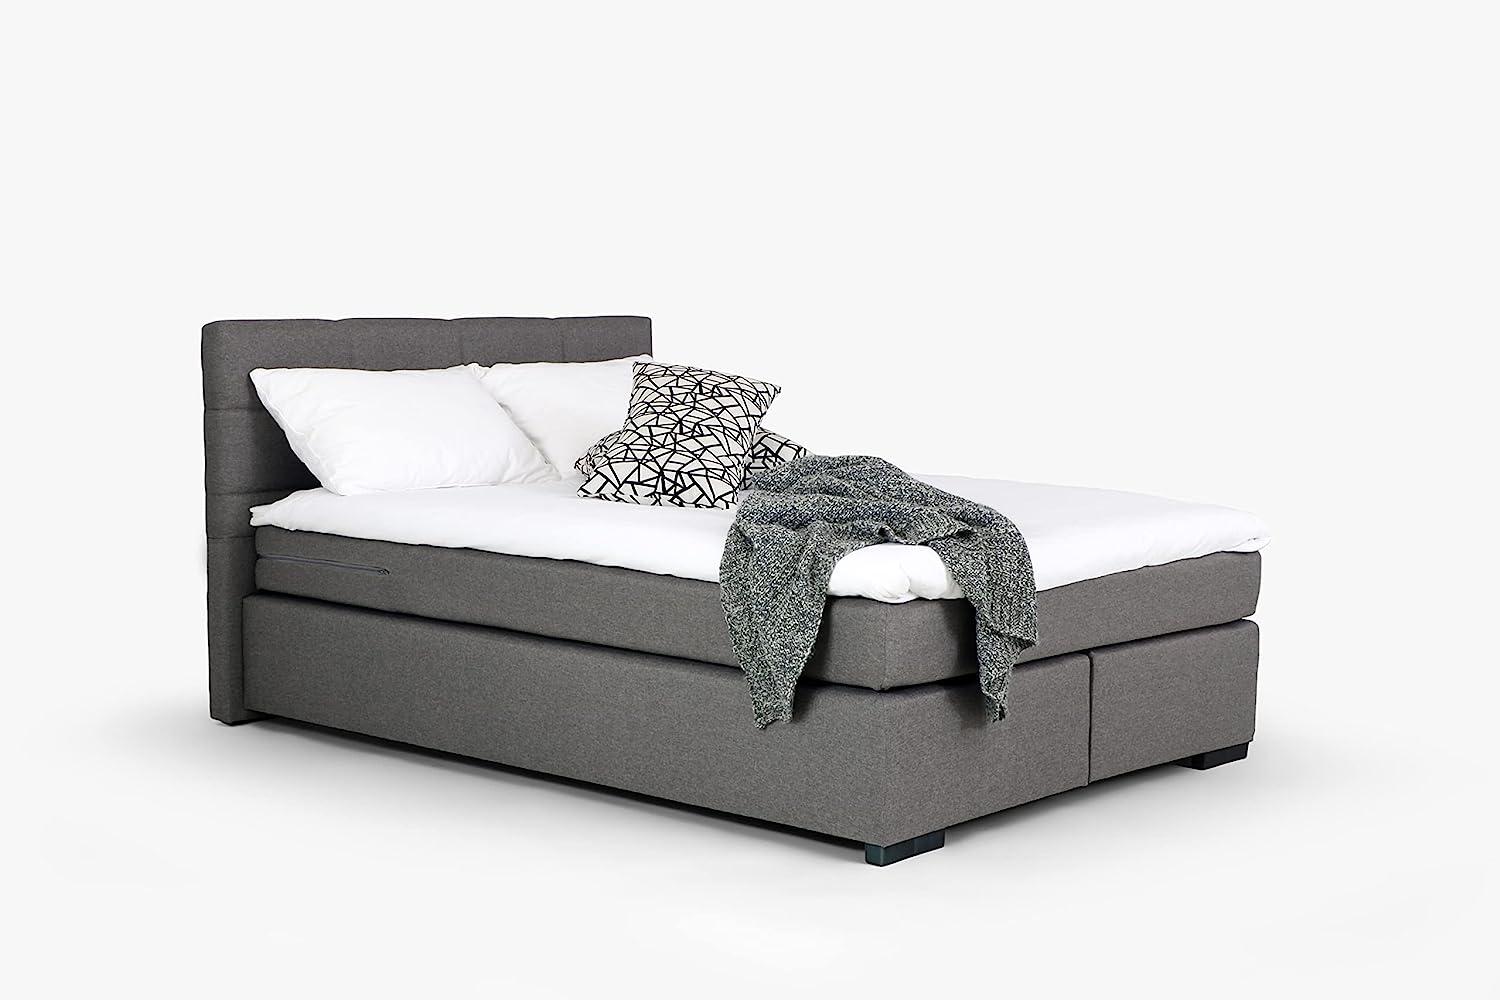 Mivano Beast Boxbett, Komfortables Bett mit Durchgehender Matratze (H3) und Topper, Flachgewebe Karoo Grau, Liegefläche 160 x 200 cm Bild 1